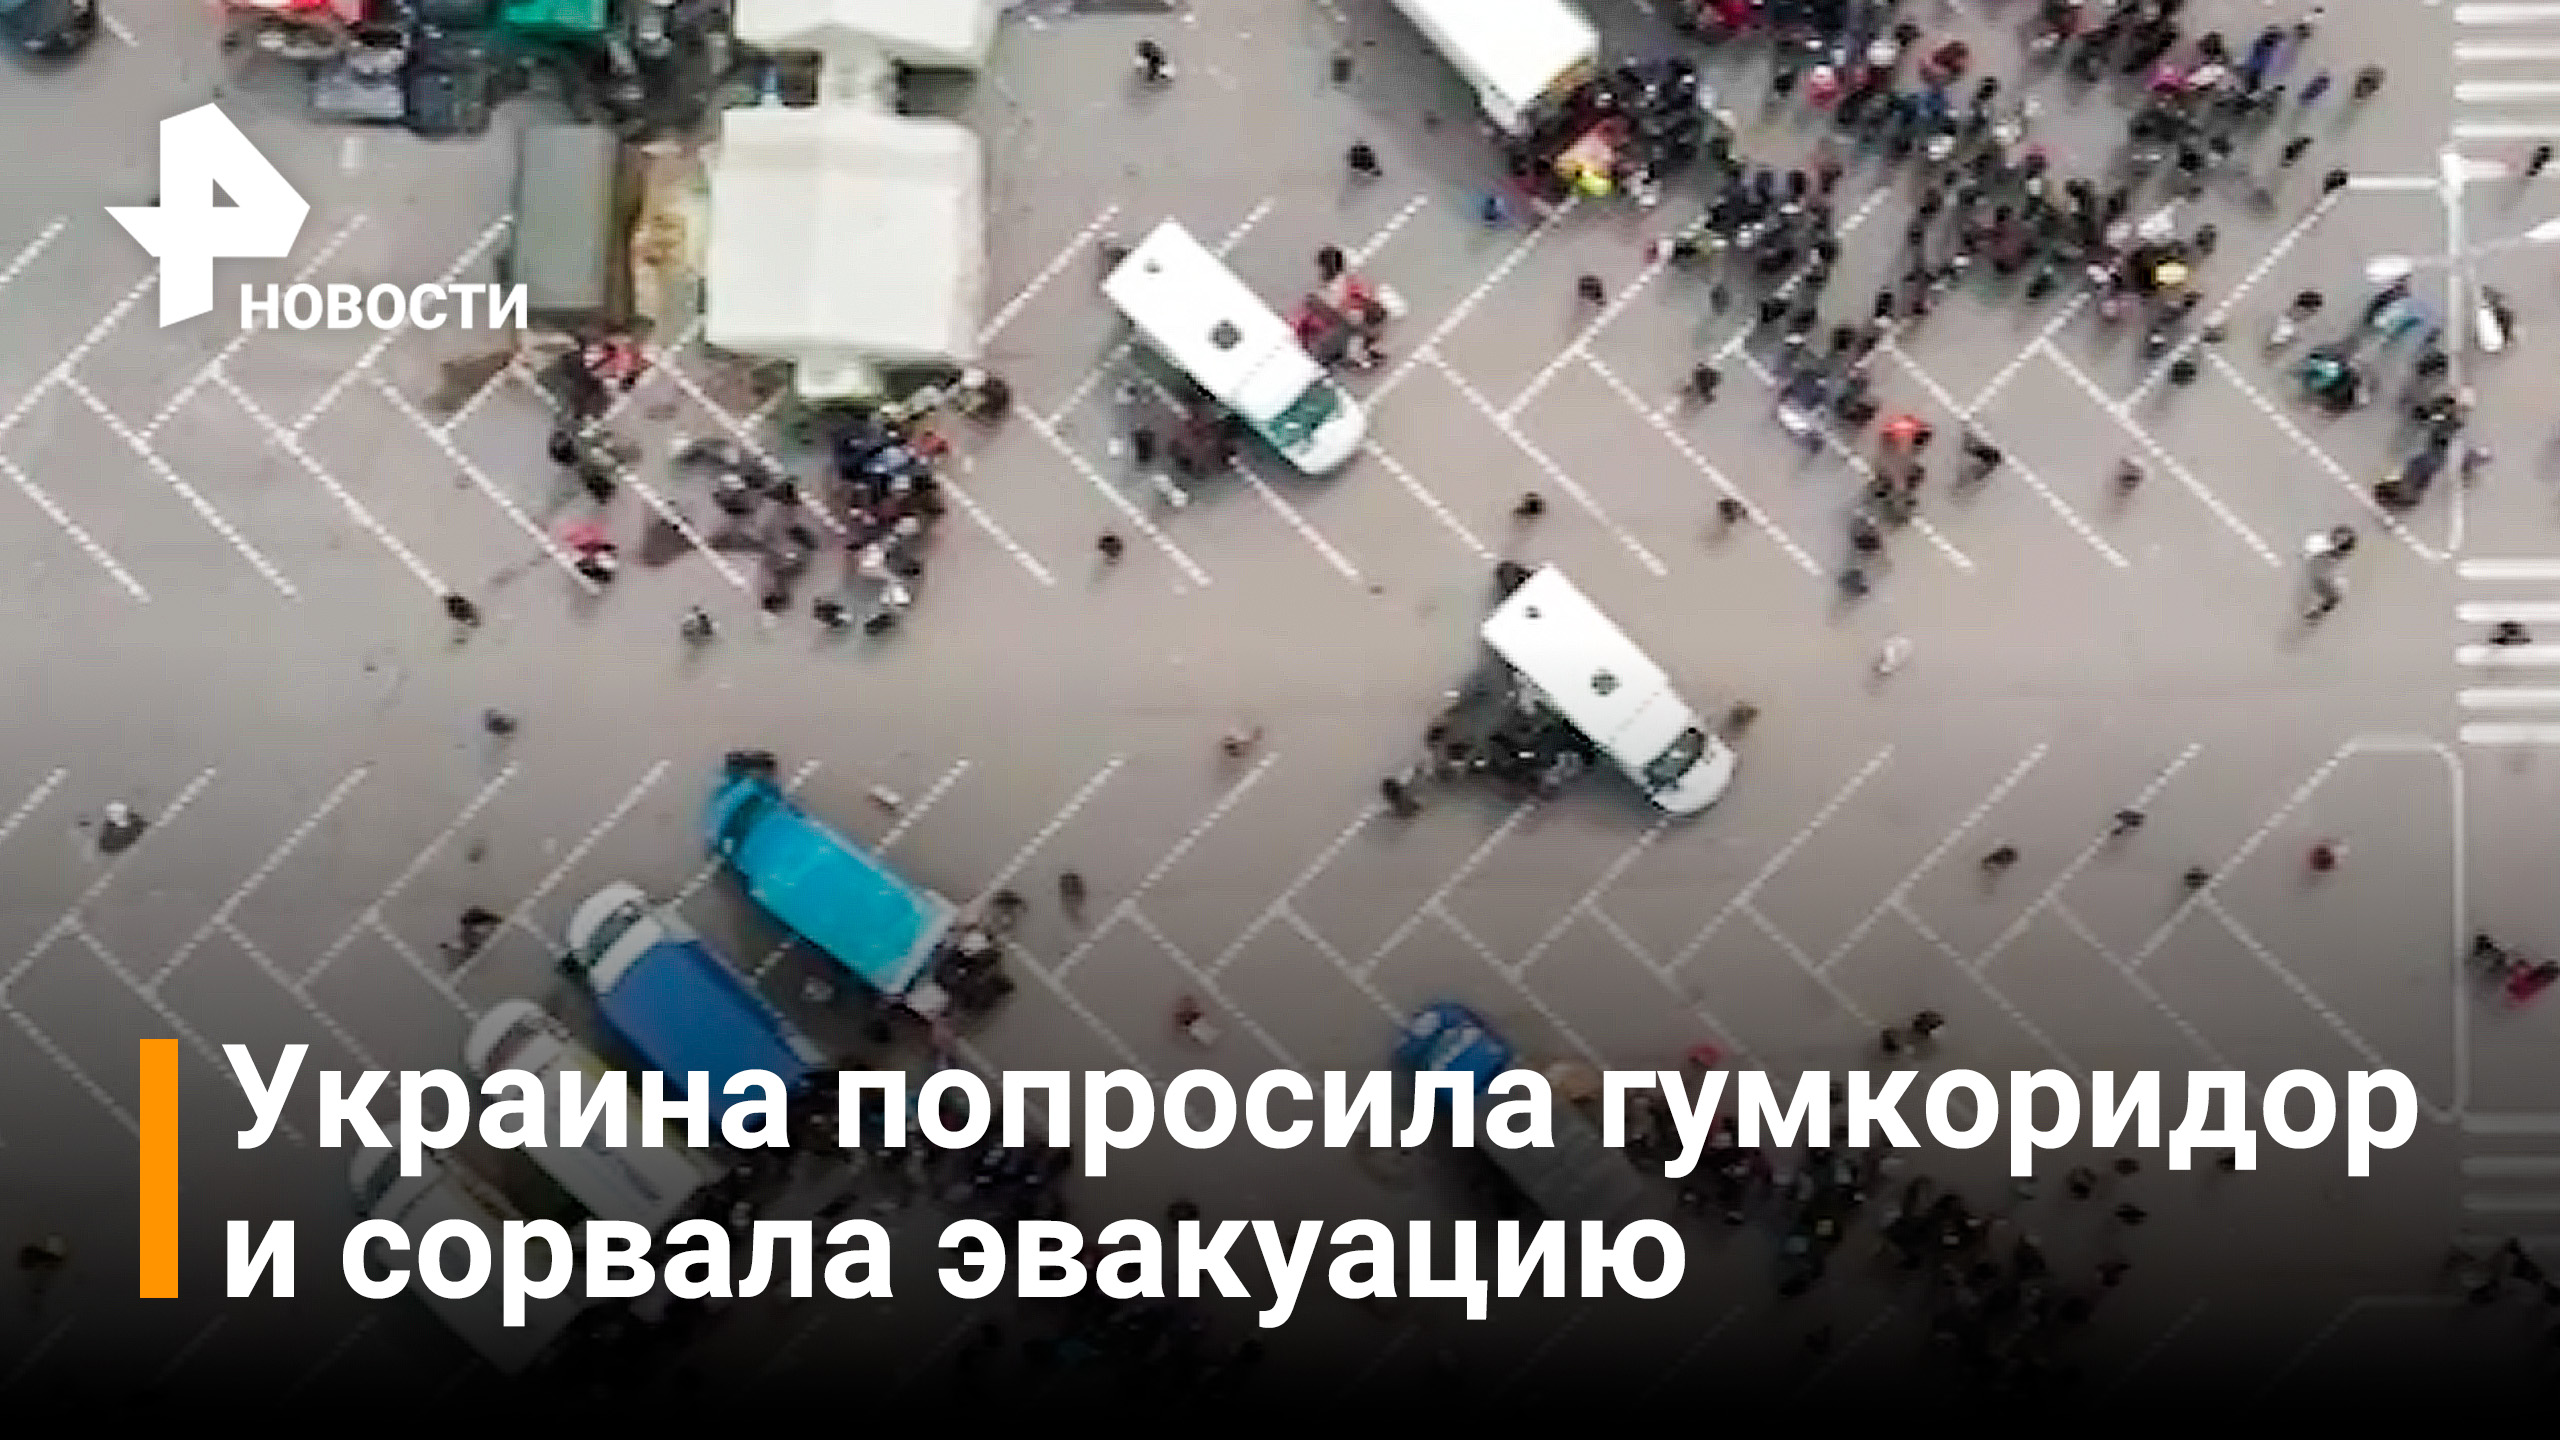 НМ ДНР: Украина сорвала эвакуацию мирных граждан из Мариуполя / РЕН Новости